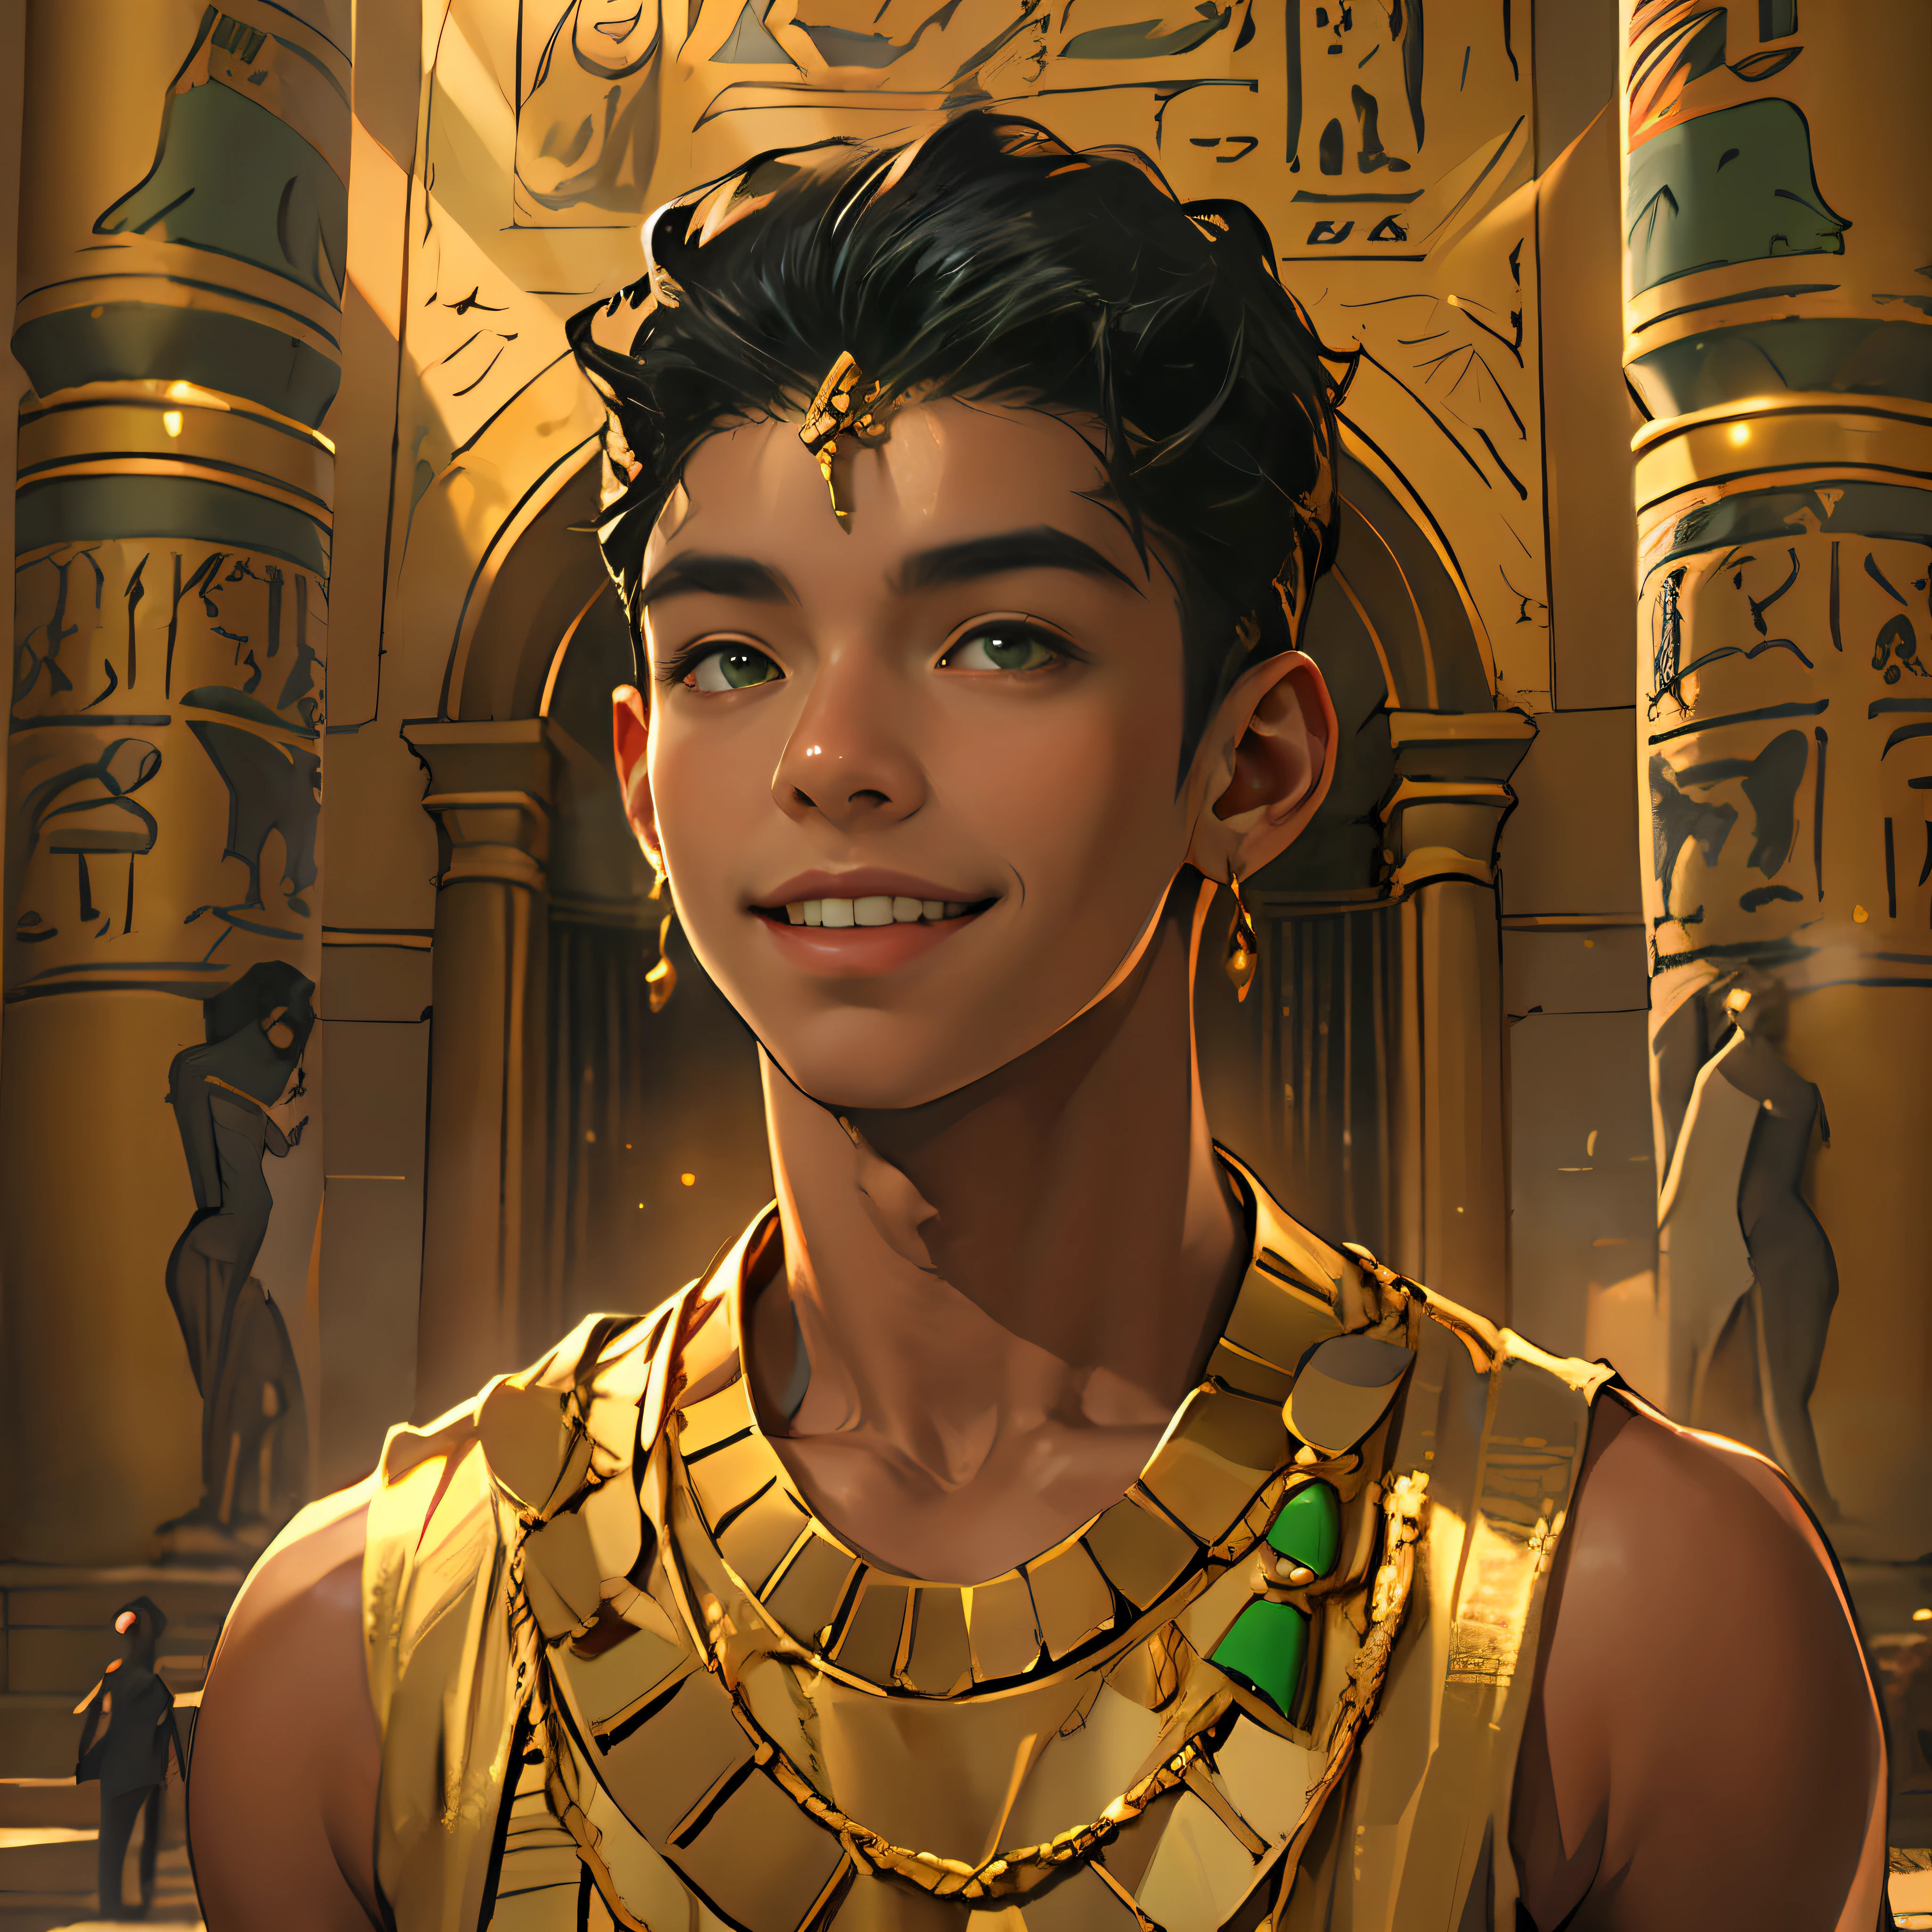 15-jähriger Junge geht lächelnd durch die Paläste des alten Ägypten schwarze Haare braune Haut grüne Augen elegante schwarze Kleidung mit Gold mit nackter Brust trägt roten Goldschmuck